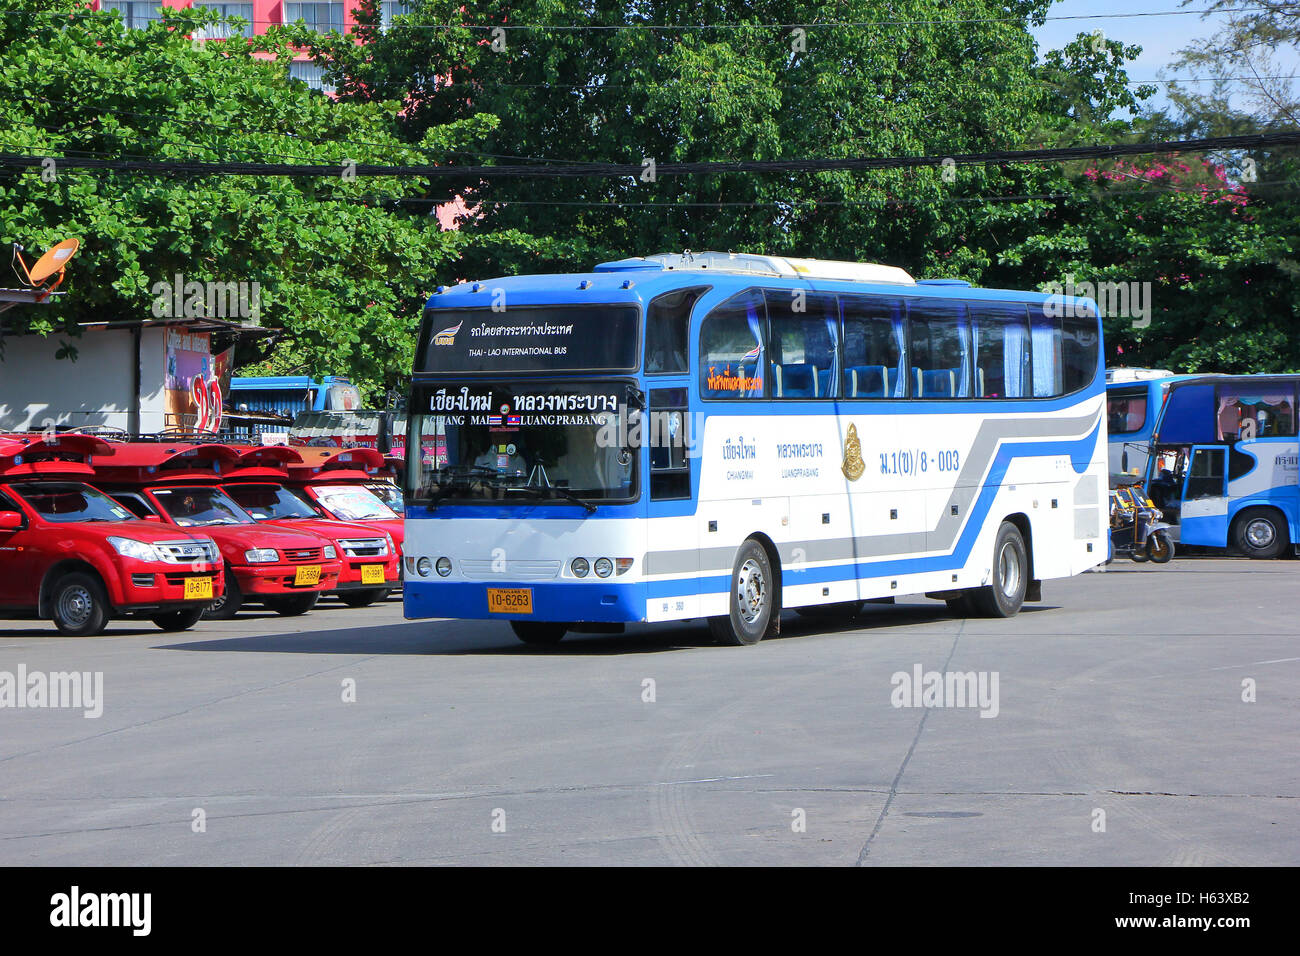 Keine 8-003 der thailändischen Regierung Busunternehmen Bus. Internationale Bus zwischen Chiangmai (Thailand) und Luang Prabang (Laos). Stockfoto